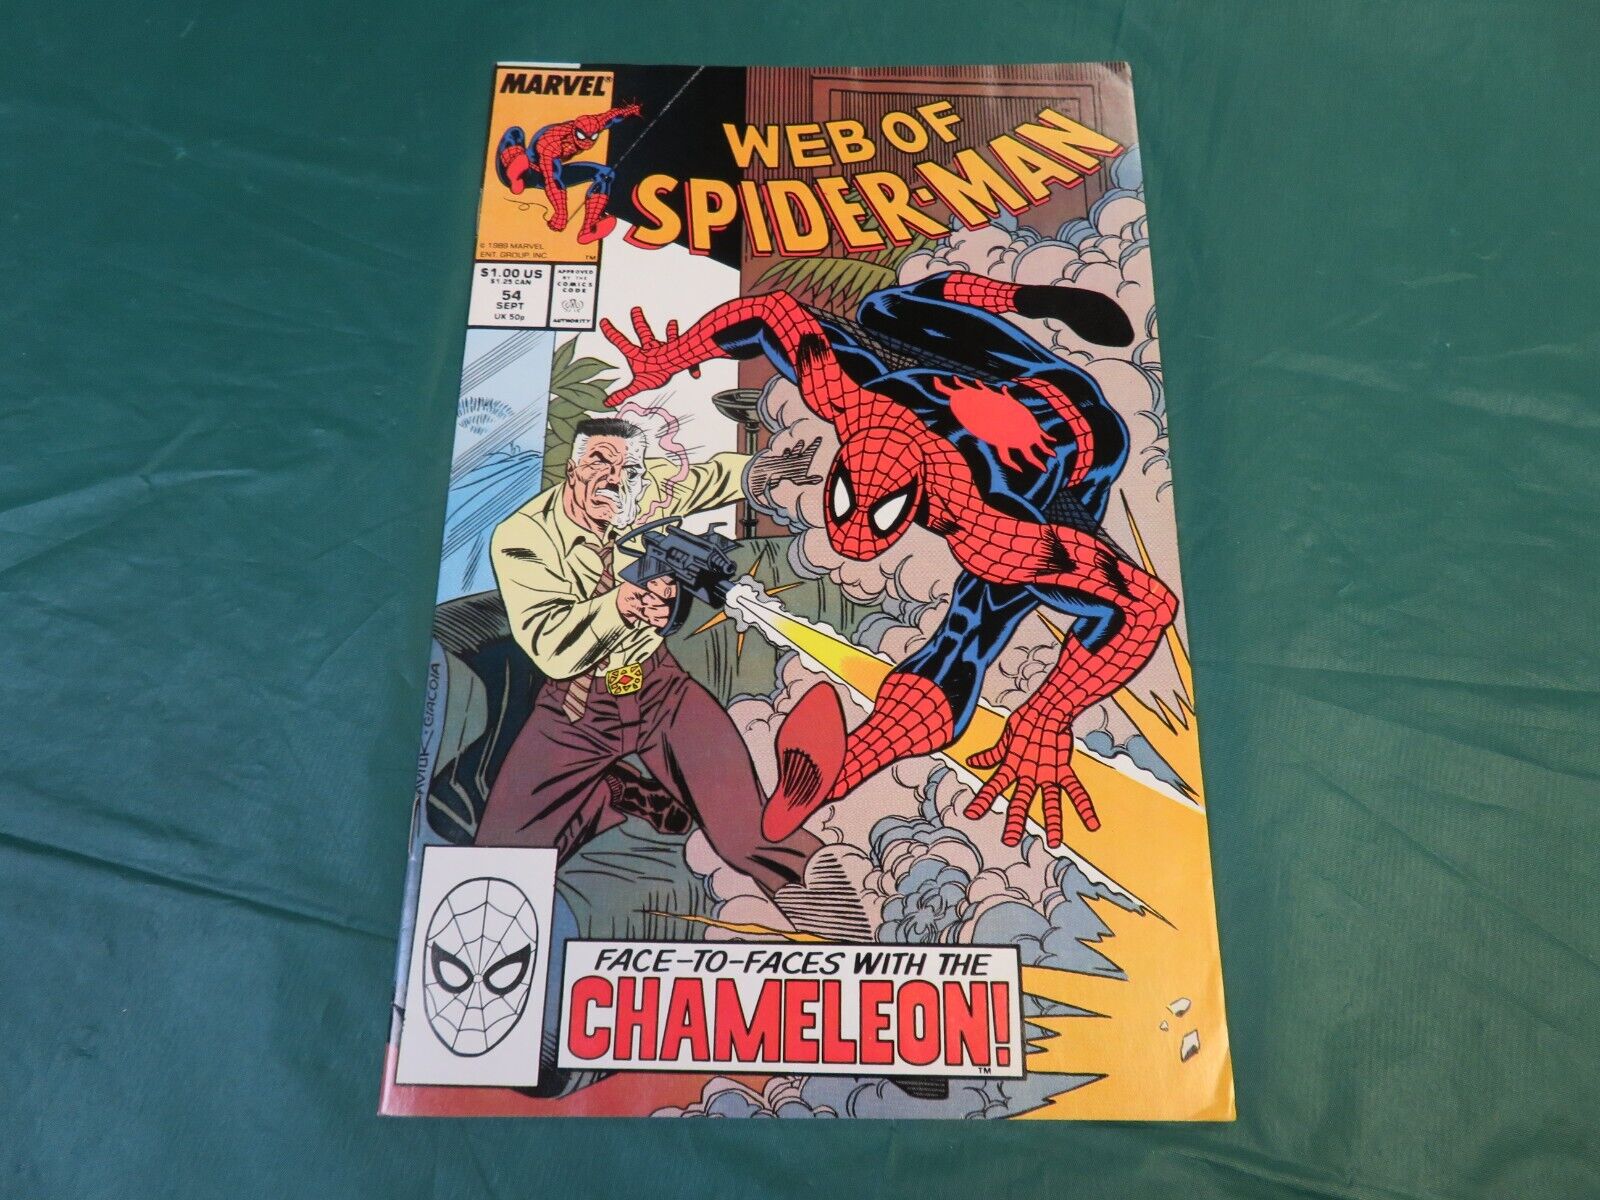 Marvel Comics: Web Of Spider-Man #54 (September 1989) *Chameleon